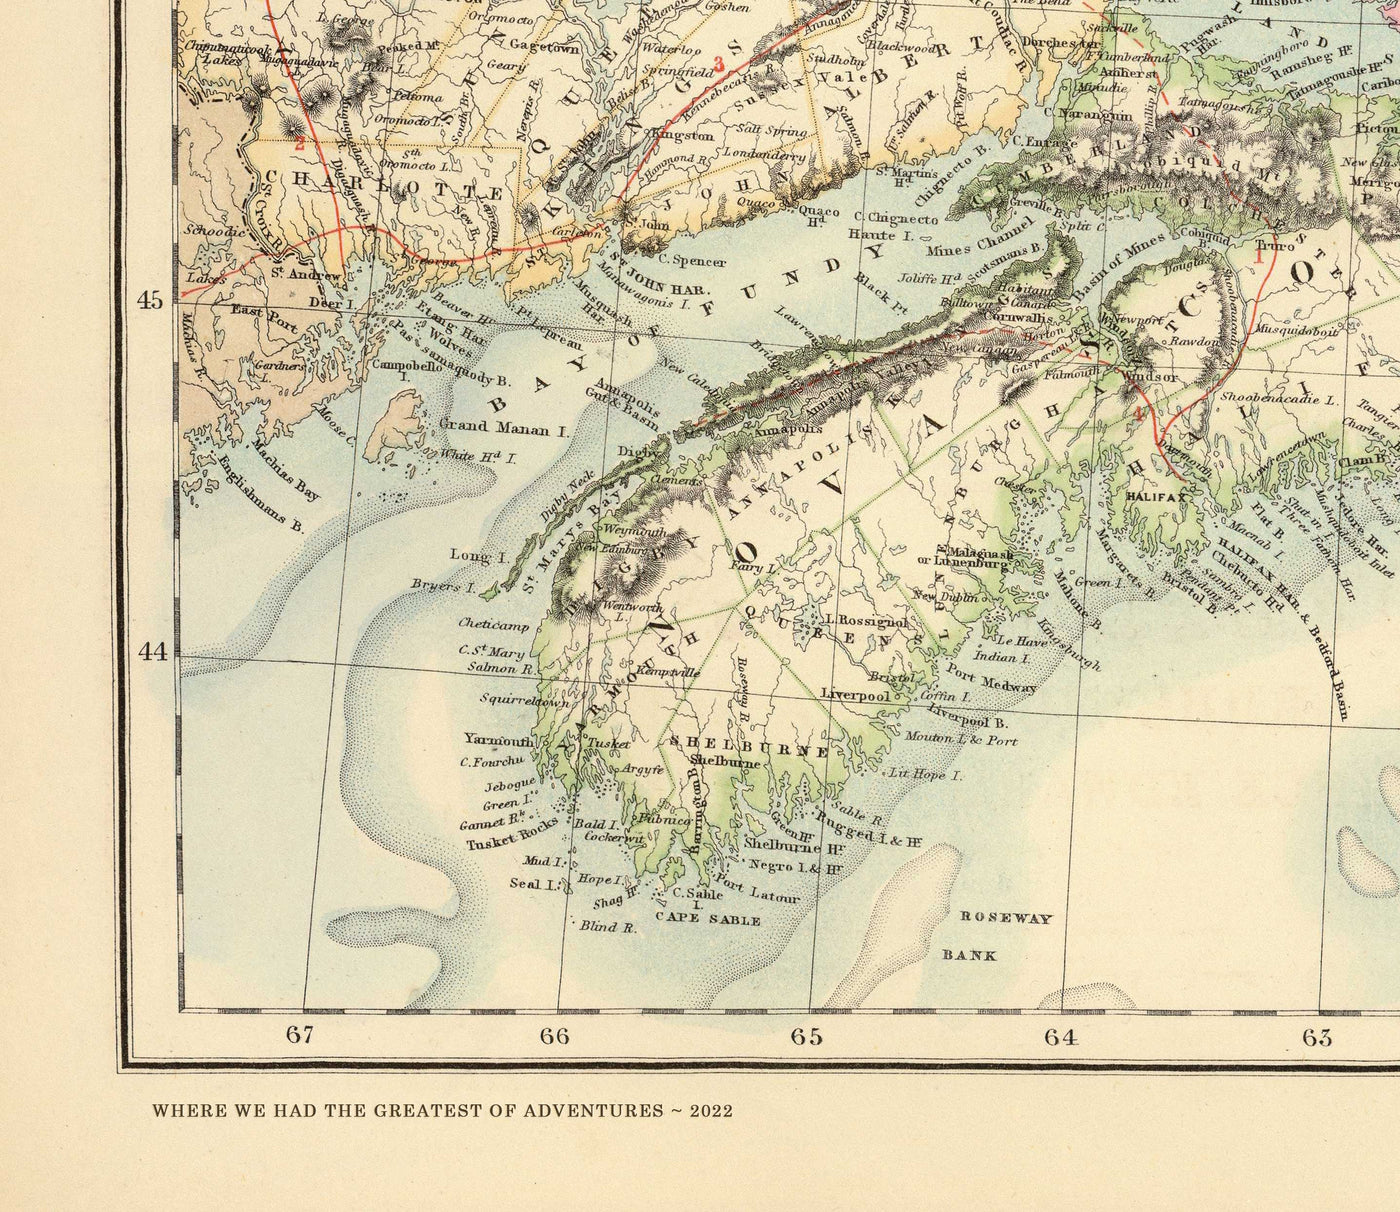 Ancienne carte historique de Baltimore en 1954 par Edward Tunis - Centre-ville, Johnstown, Petite Italie, Otterbein, Port de Baltimore